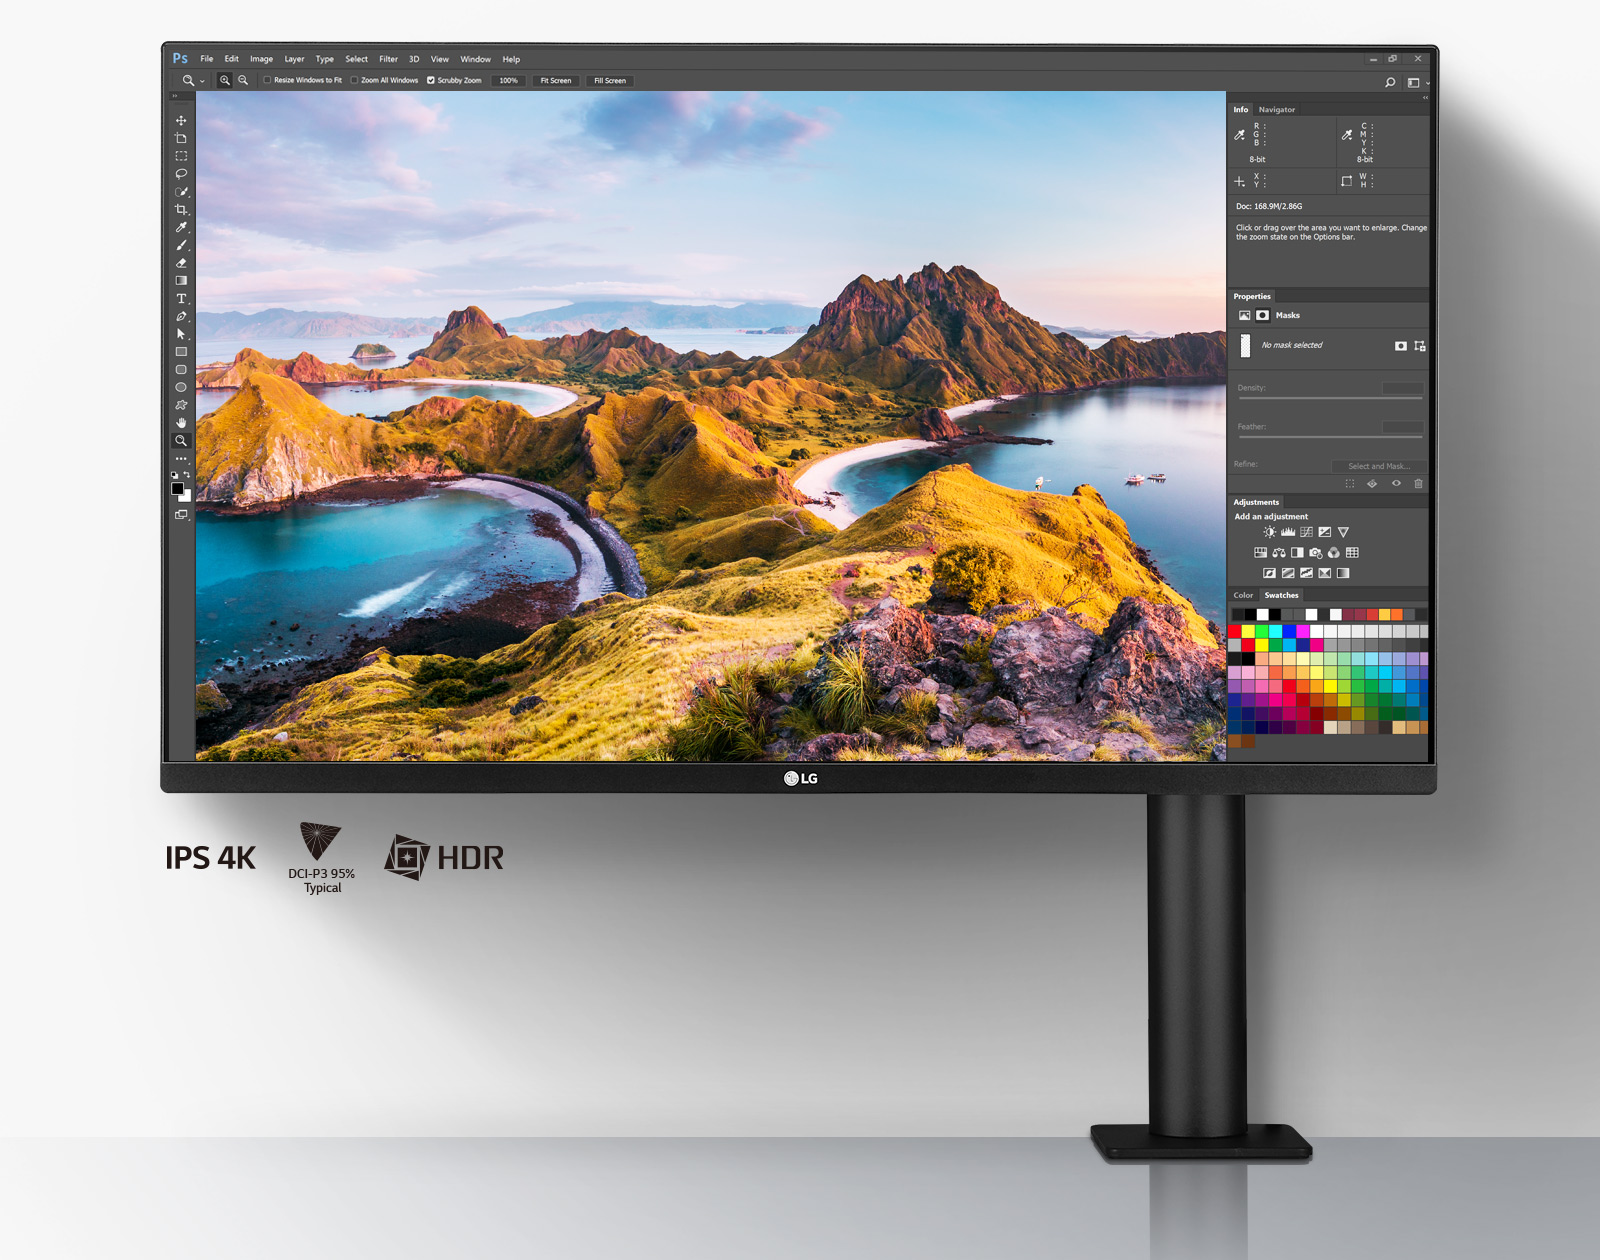 Ekran IPS UHD 4K: Duży i wyraźny obraz dający komfort wizualny, ekran IPS o przekątnej 31,5 cala, DCI-P3  95% (typ.), HDR